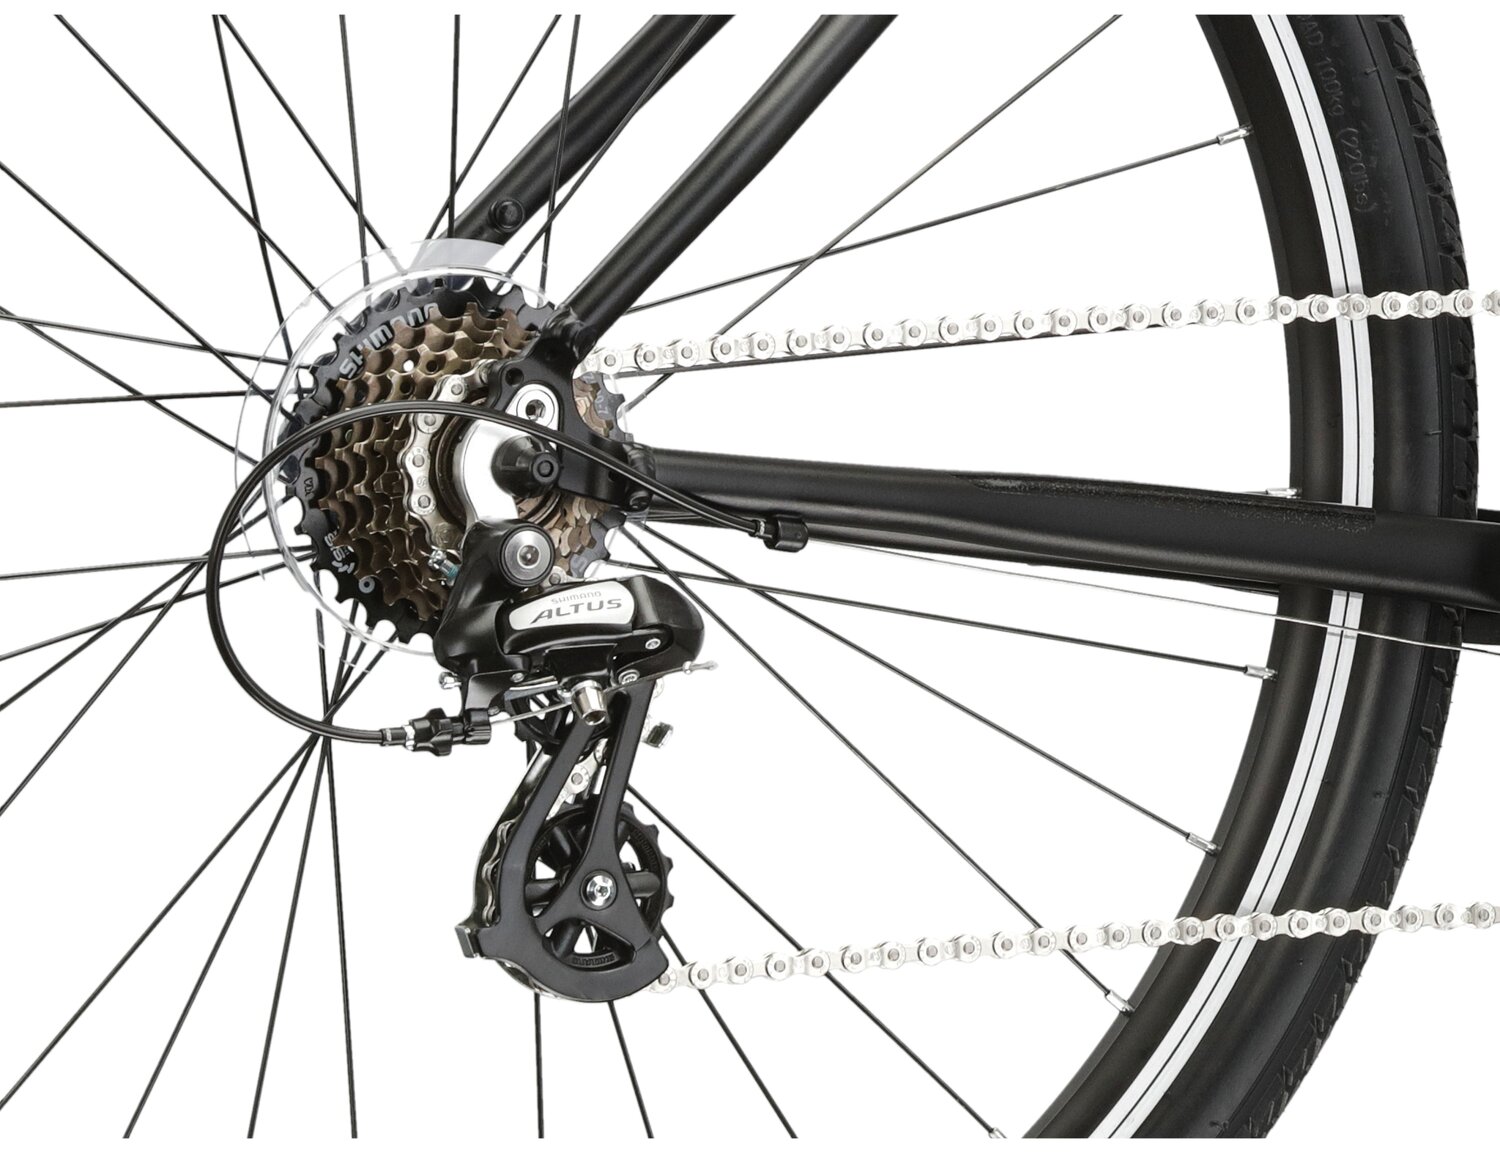  Tylna siedmiorzędowa przerzutka Shimano Altus M310 oraz hamulce v-brake w rowerze crossowym Kross Evado 2.0 damski 